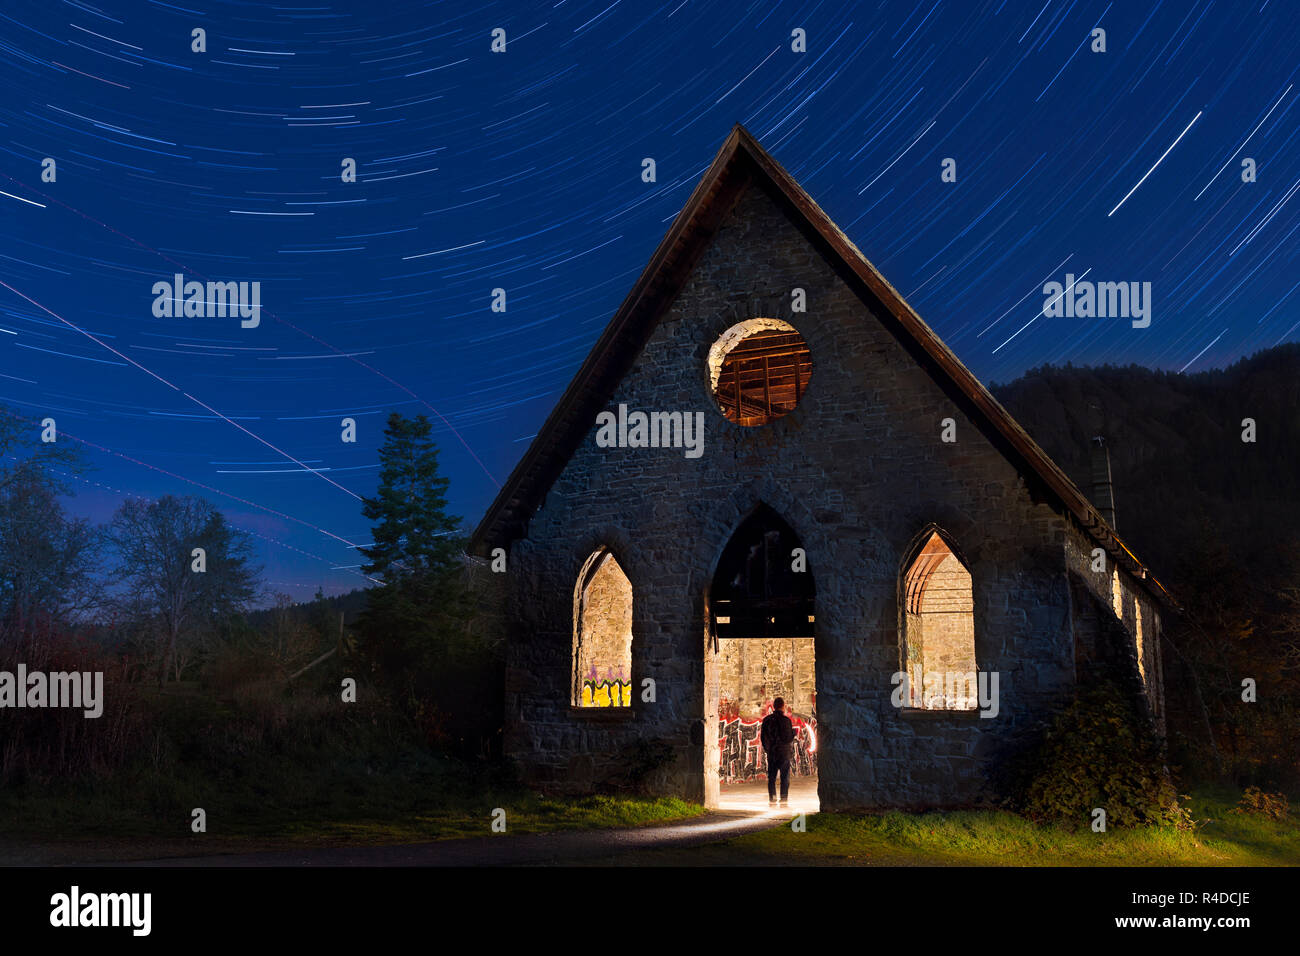 Historische alte Stein Butter Kirche in der Nähe von Cowichan Bay mit star Trails bei Nacht - Cowichan Bay, British Columbia, Kanada. Stockfoto